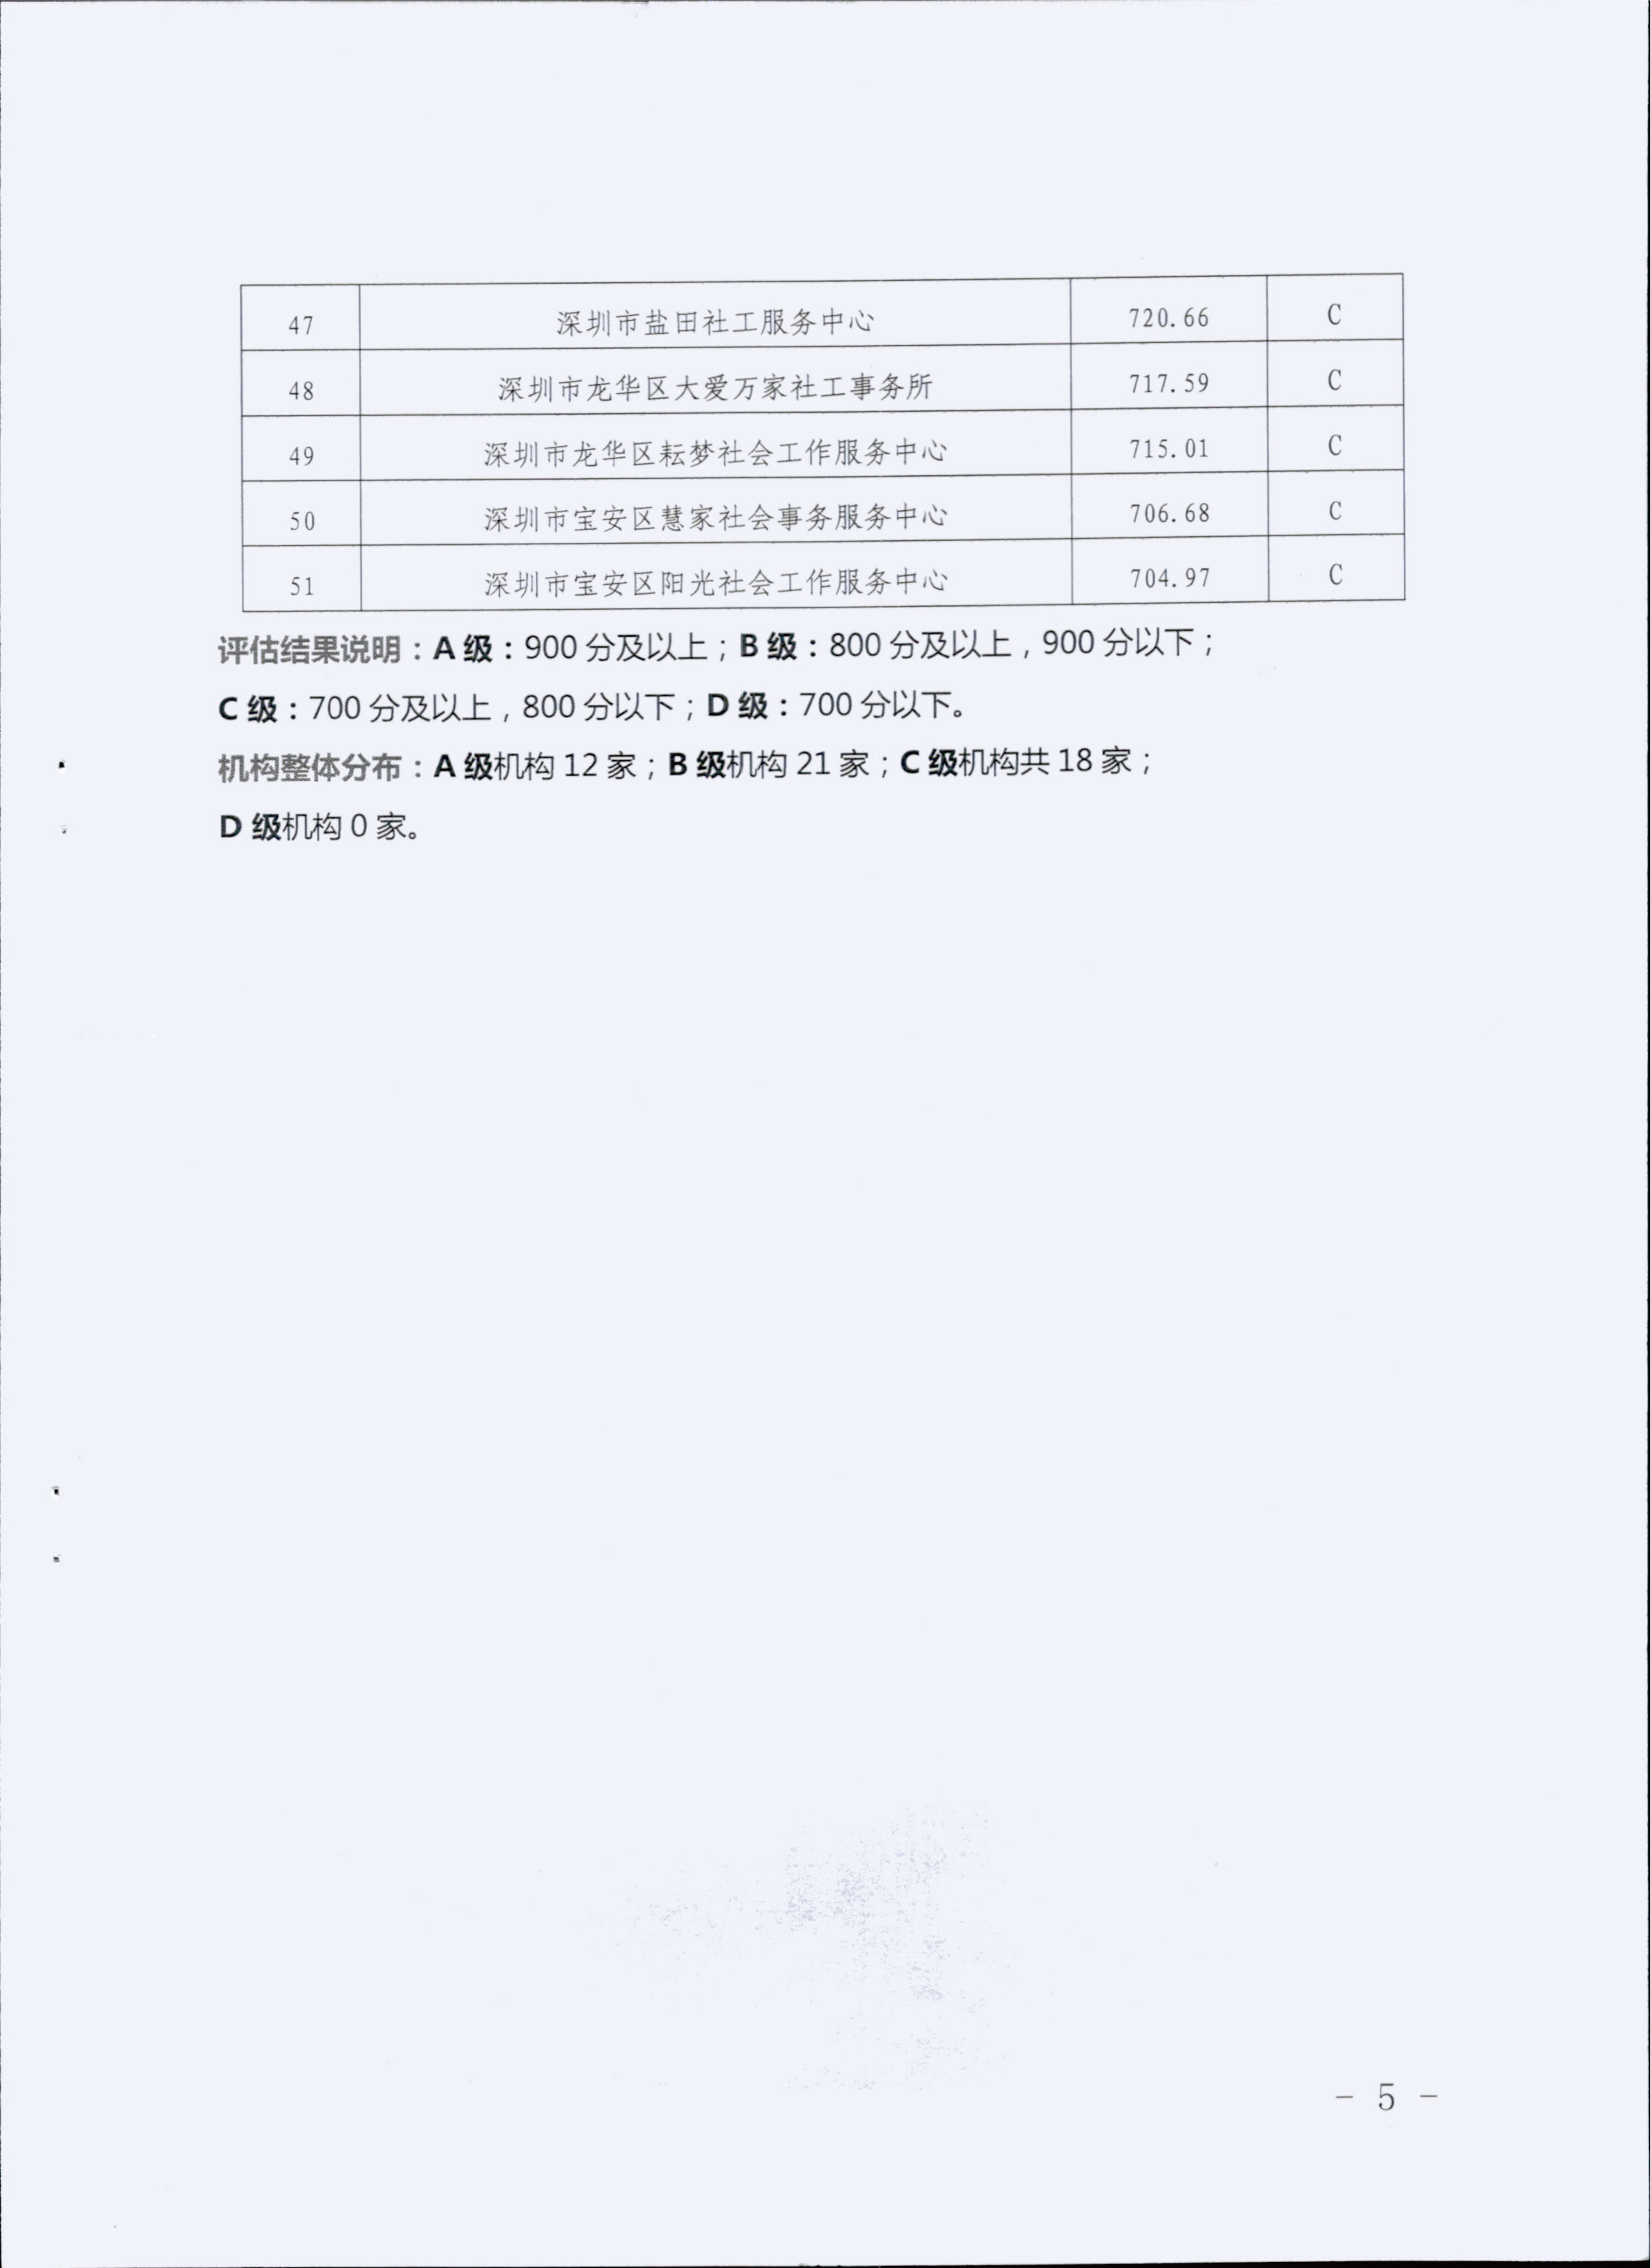 深圳市民政局关于公布2017年度深圳市社会工作服务机构绩效评估结果的通知